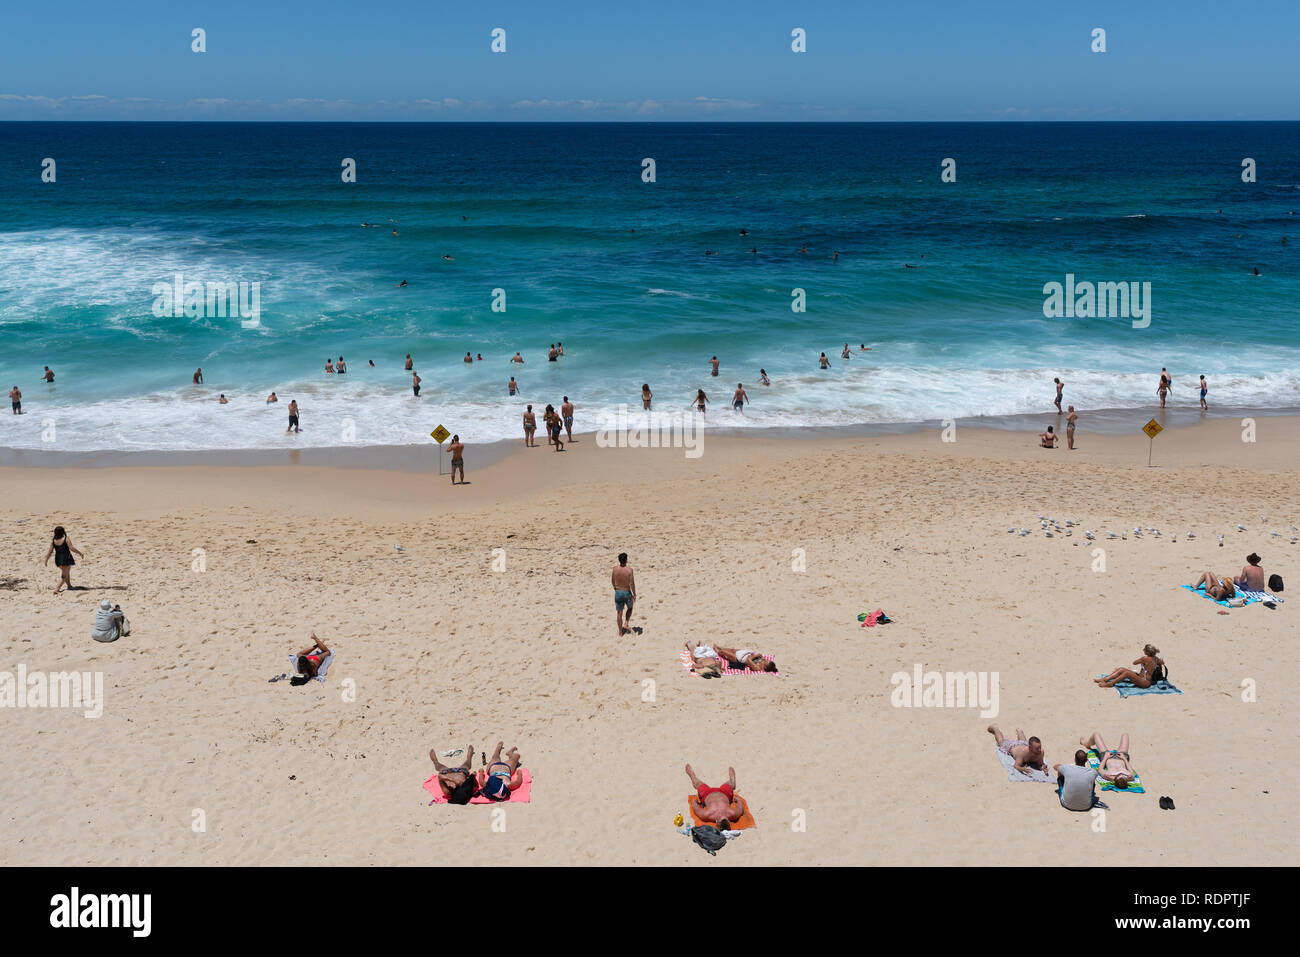 El 24 de diciembre de 2018, Bronte Sydney Australia: gente disfrutando de un día soleado de verano caliente en la playa de Bronte y nadar en el mar en Sydney, NSW, Australia Foto de stock